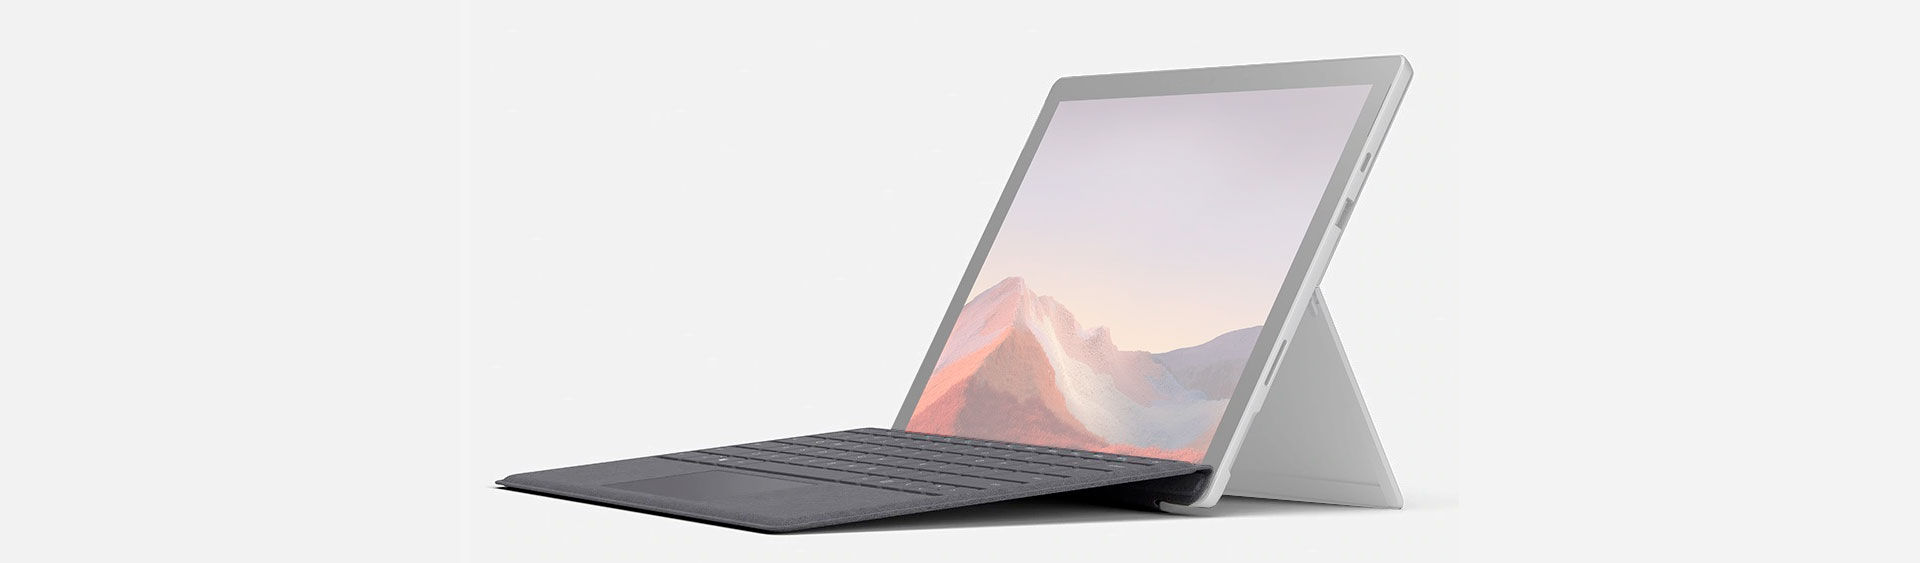 Ультра-тонкая клавиатура для планшетов Surface Pro 7 / Pro 6 / Pro / Pro 4 /Pro 3